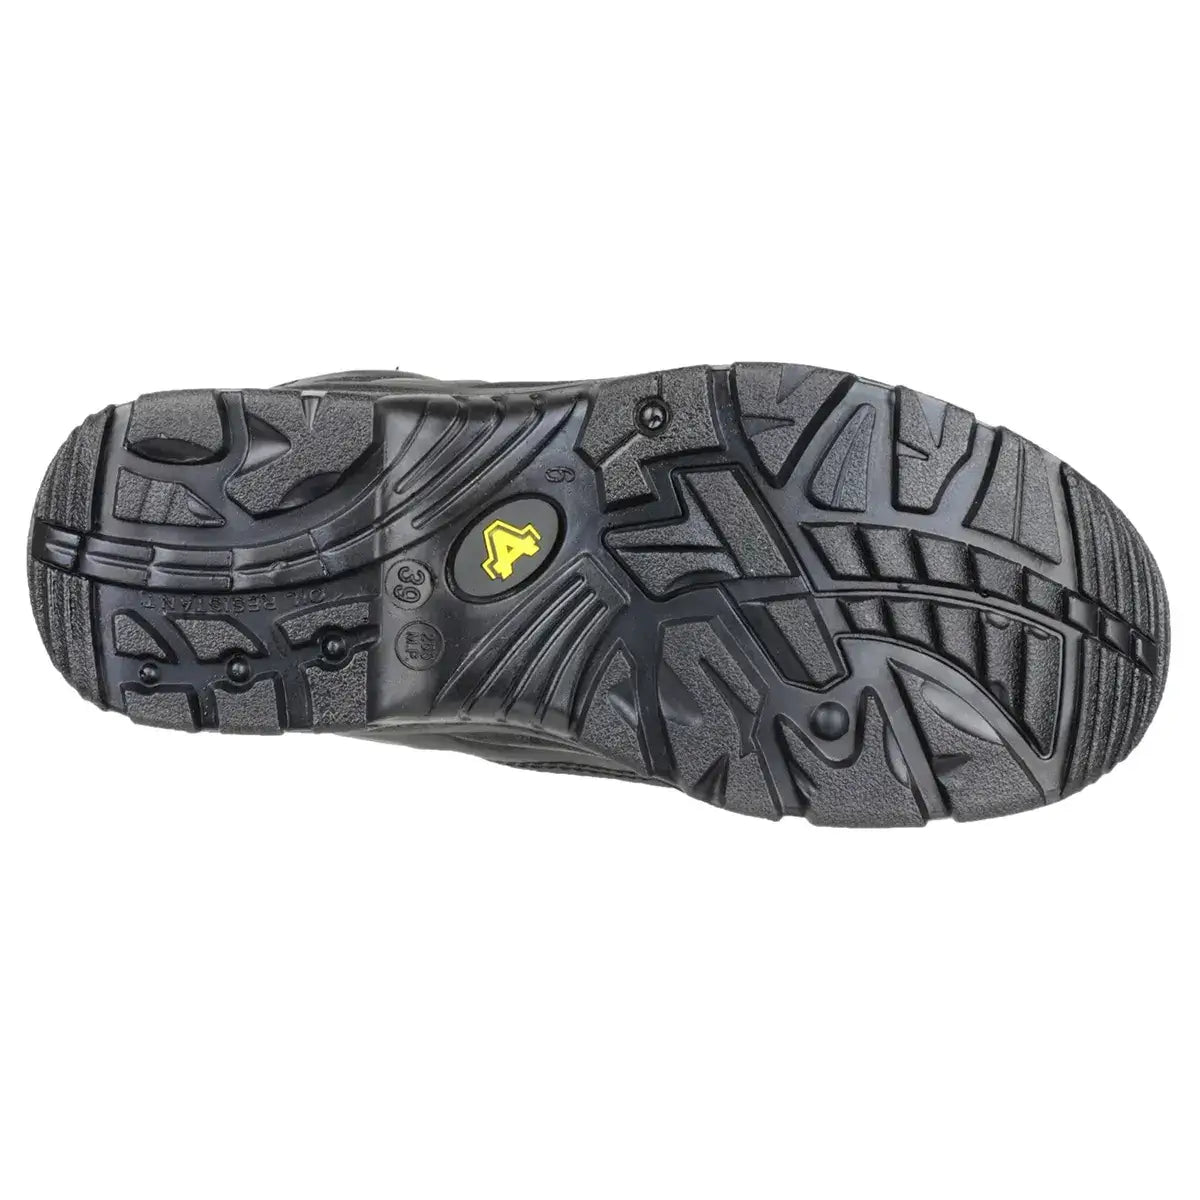 Amblers FS218 Waterproof Steel Toe & Midsole Safety Boots - Shoe Store Direct